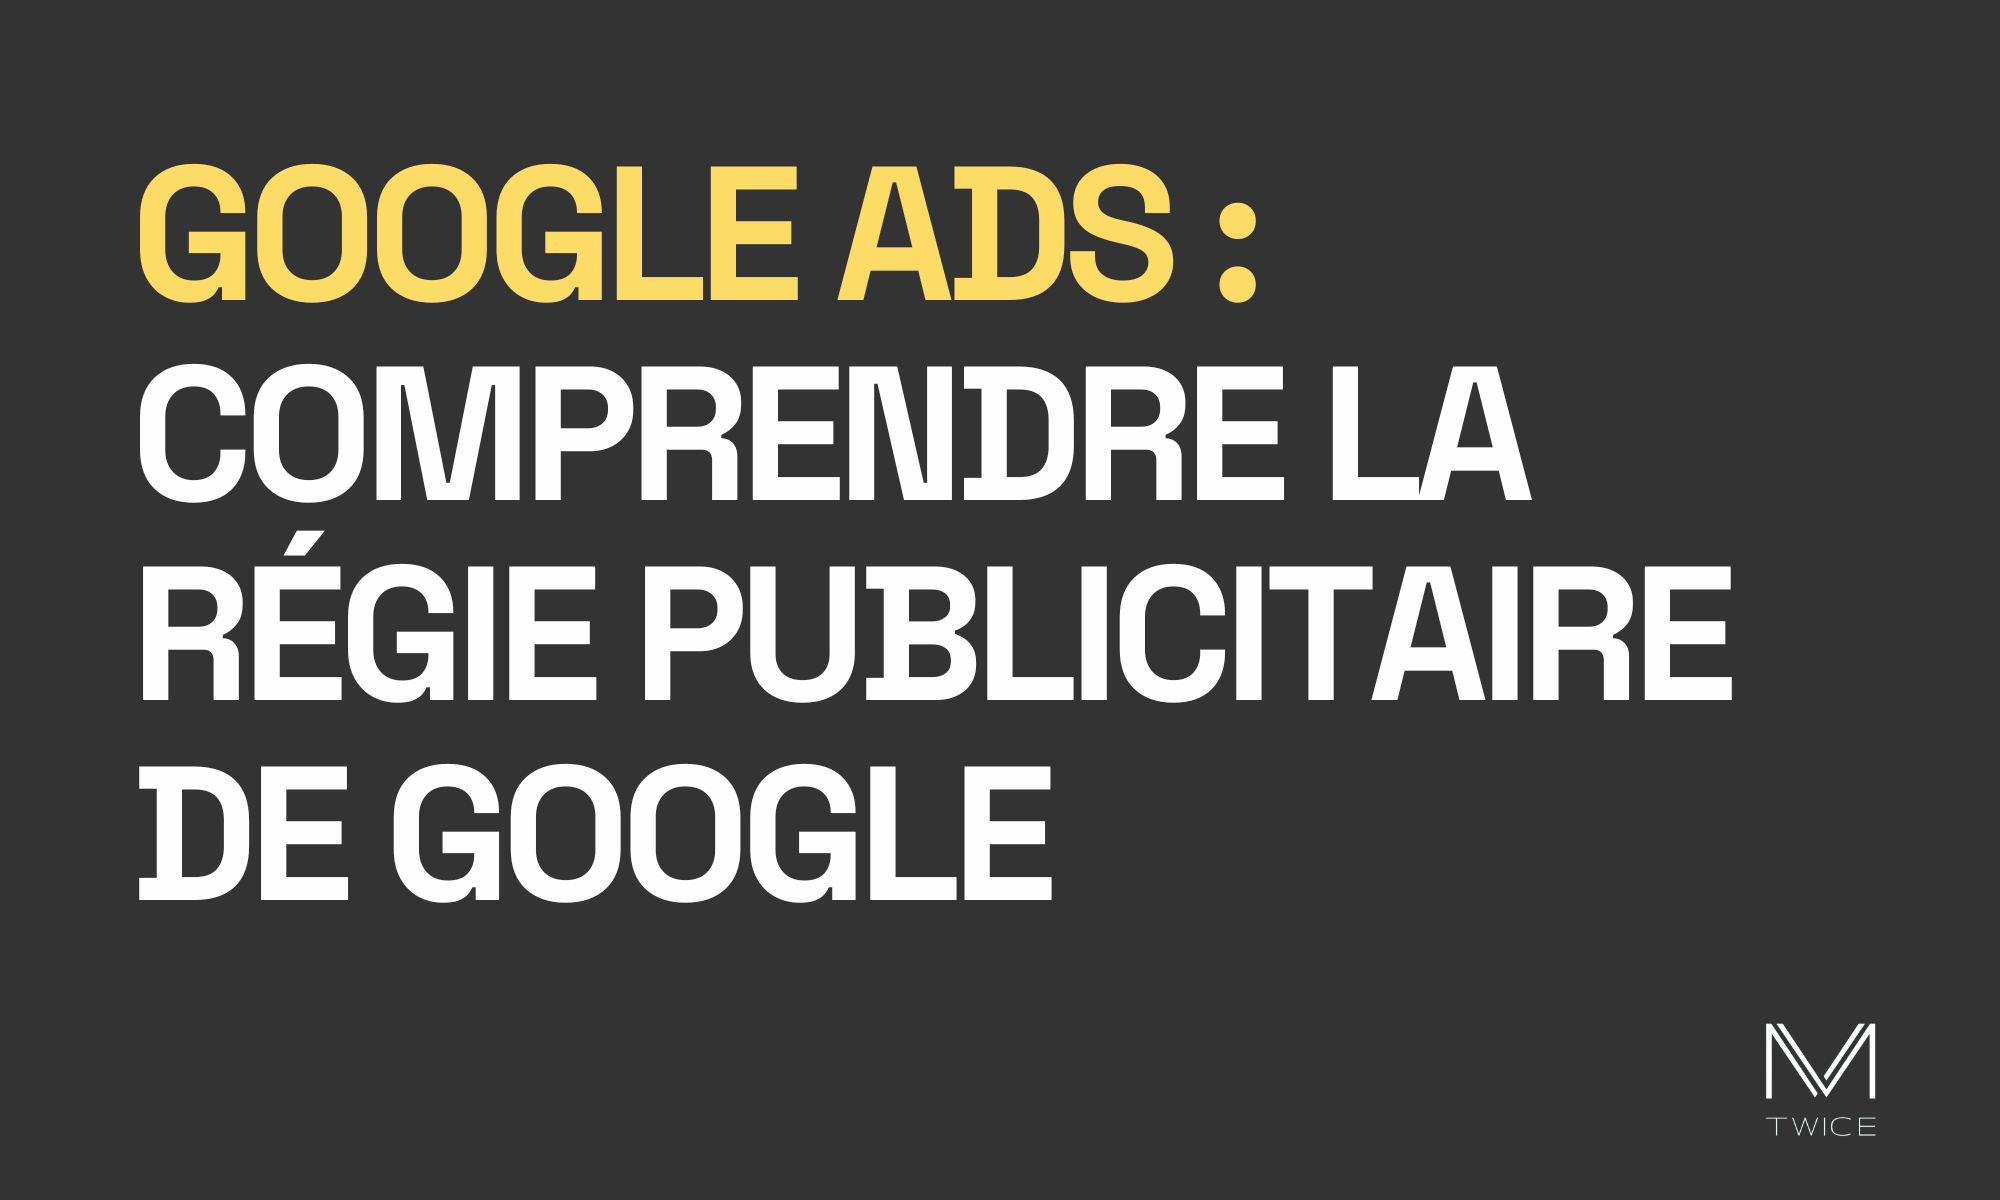 Image de couverture sur fond noir et lettres blanches de l'article de blog 'Google ads - comprendre la régie publicitaire de google' avec le logo de M-TWICE en bas à droite.